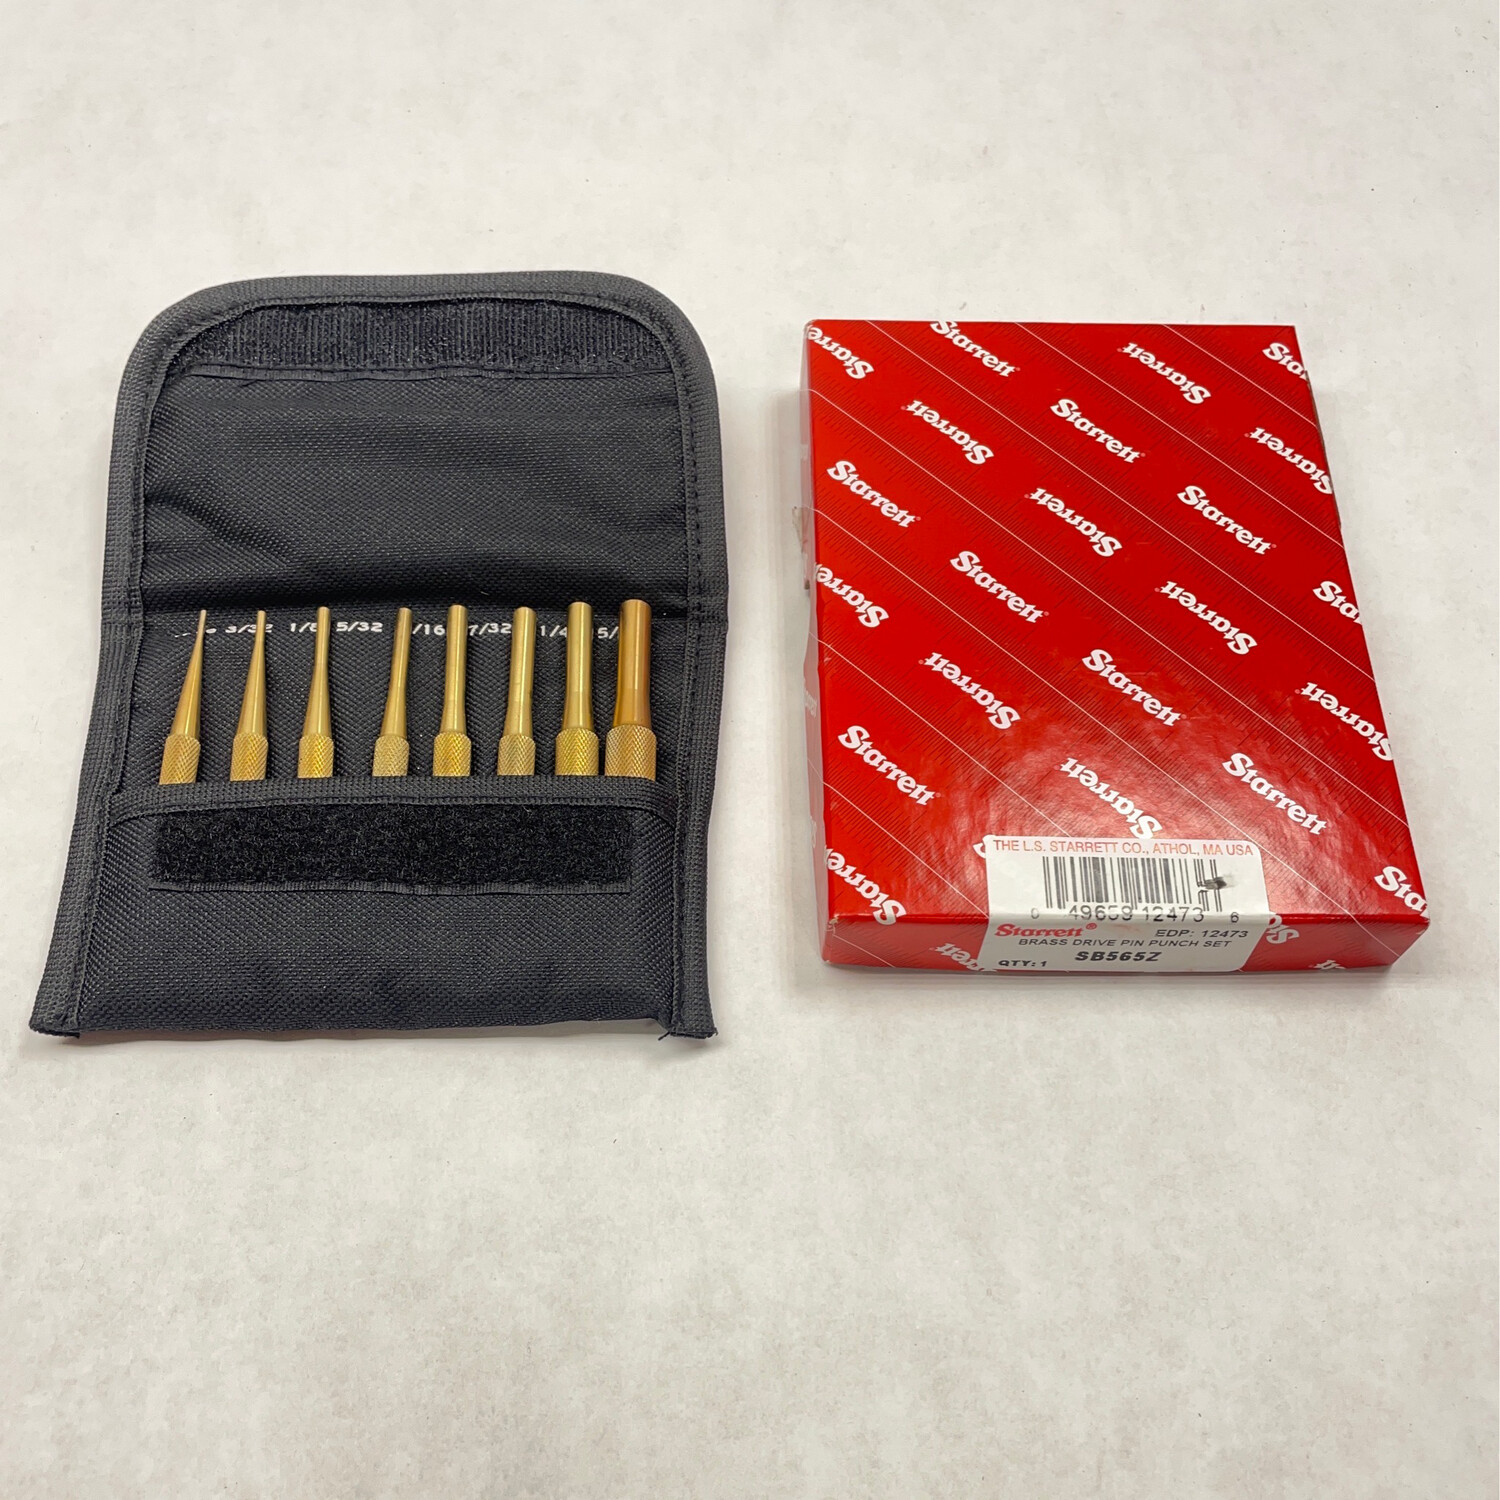 New Starrett Brass Drive Pin Punch Set, SB565Z